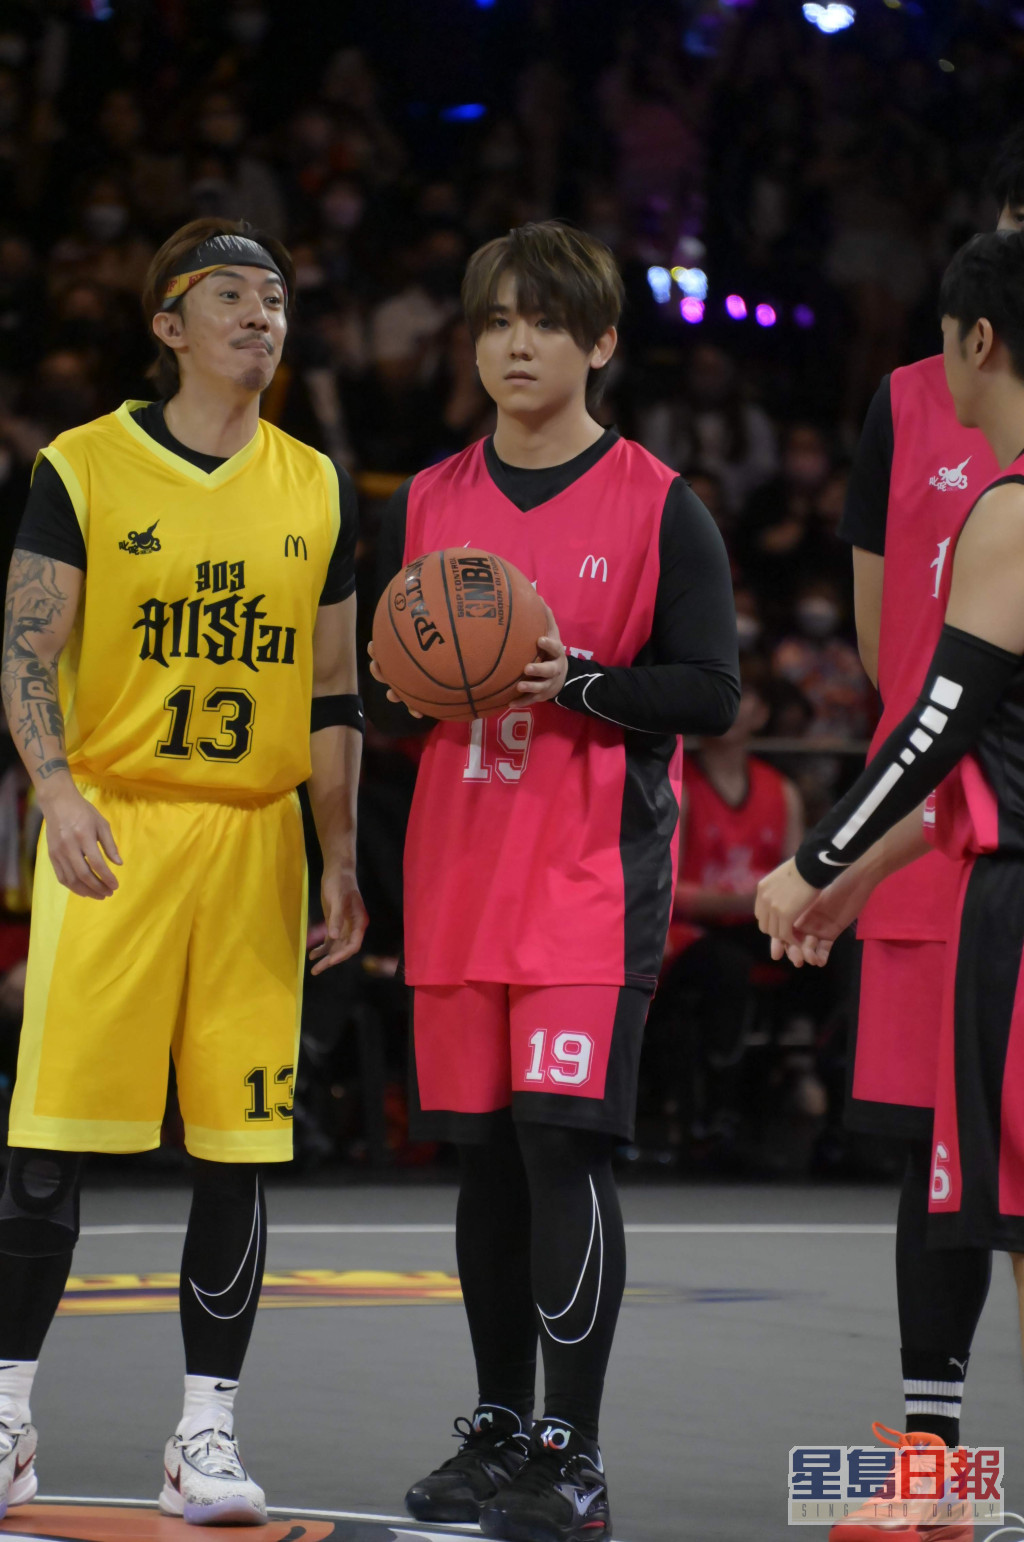 姜涛去年11月参加《903 AllStar 篮球赛》不慎扭伤右膝伤及旧患，导致膝关节十字韧带撕裂。